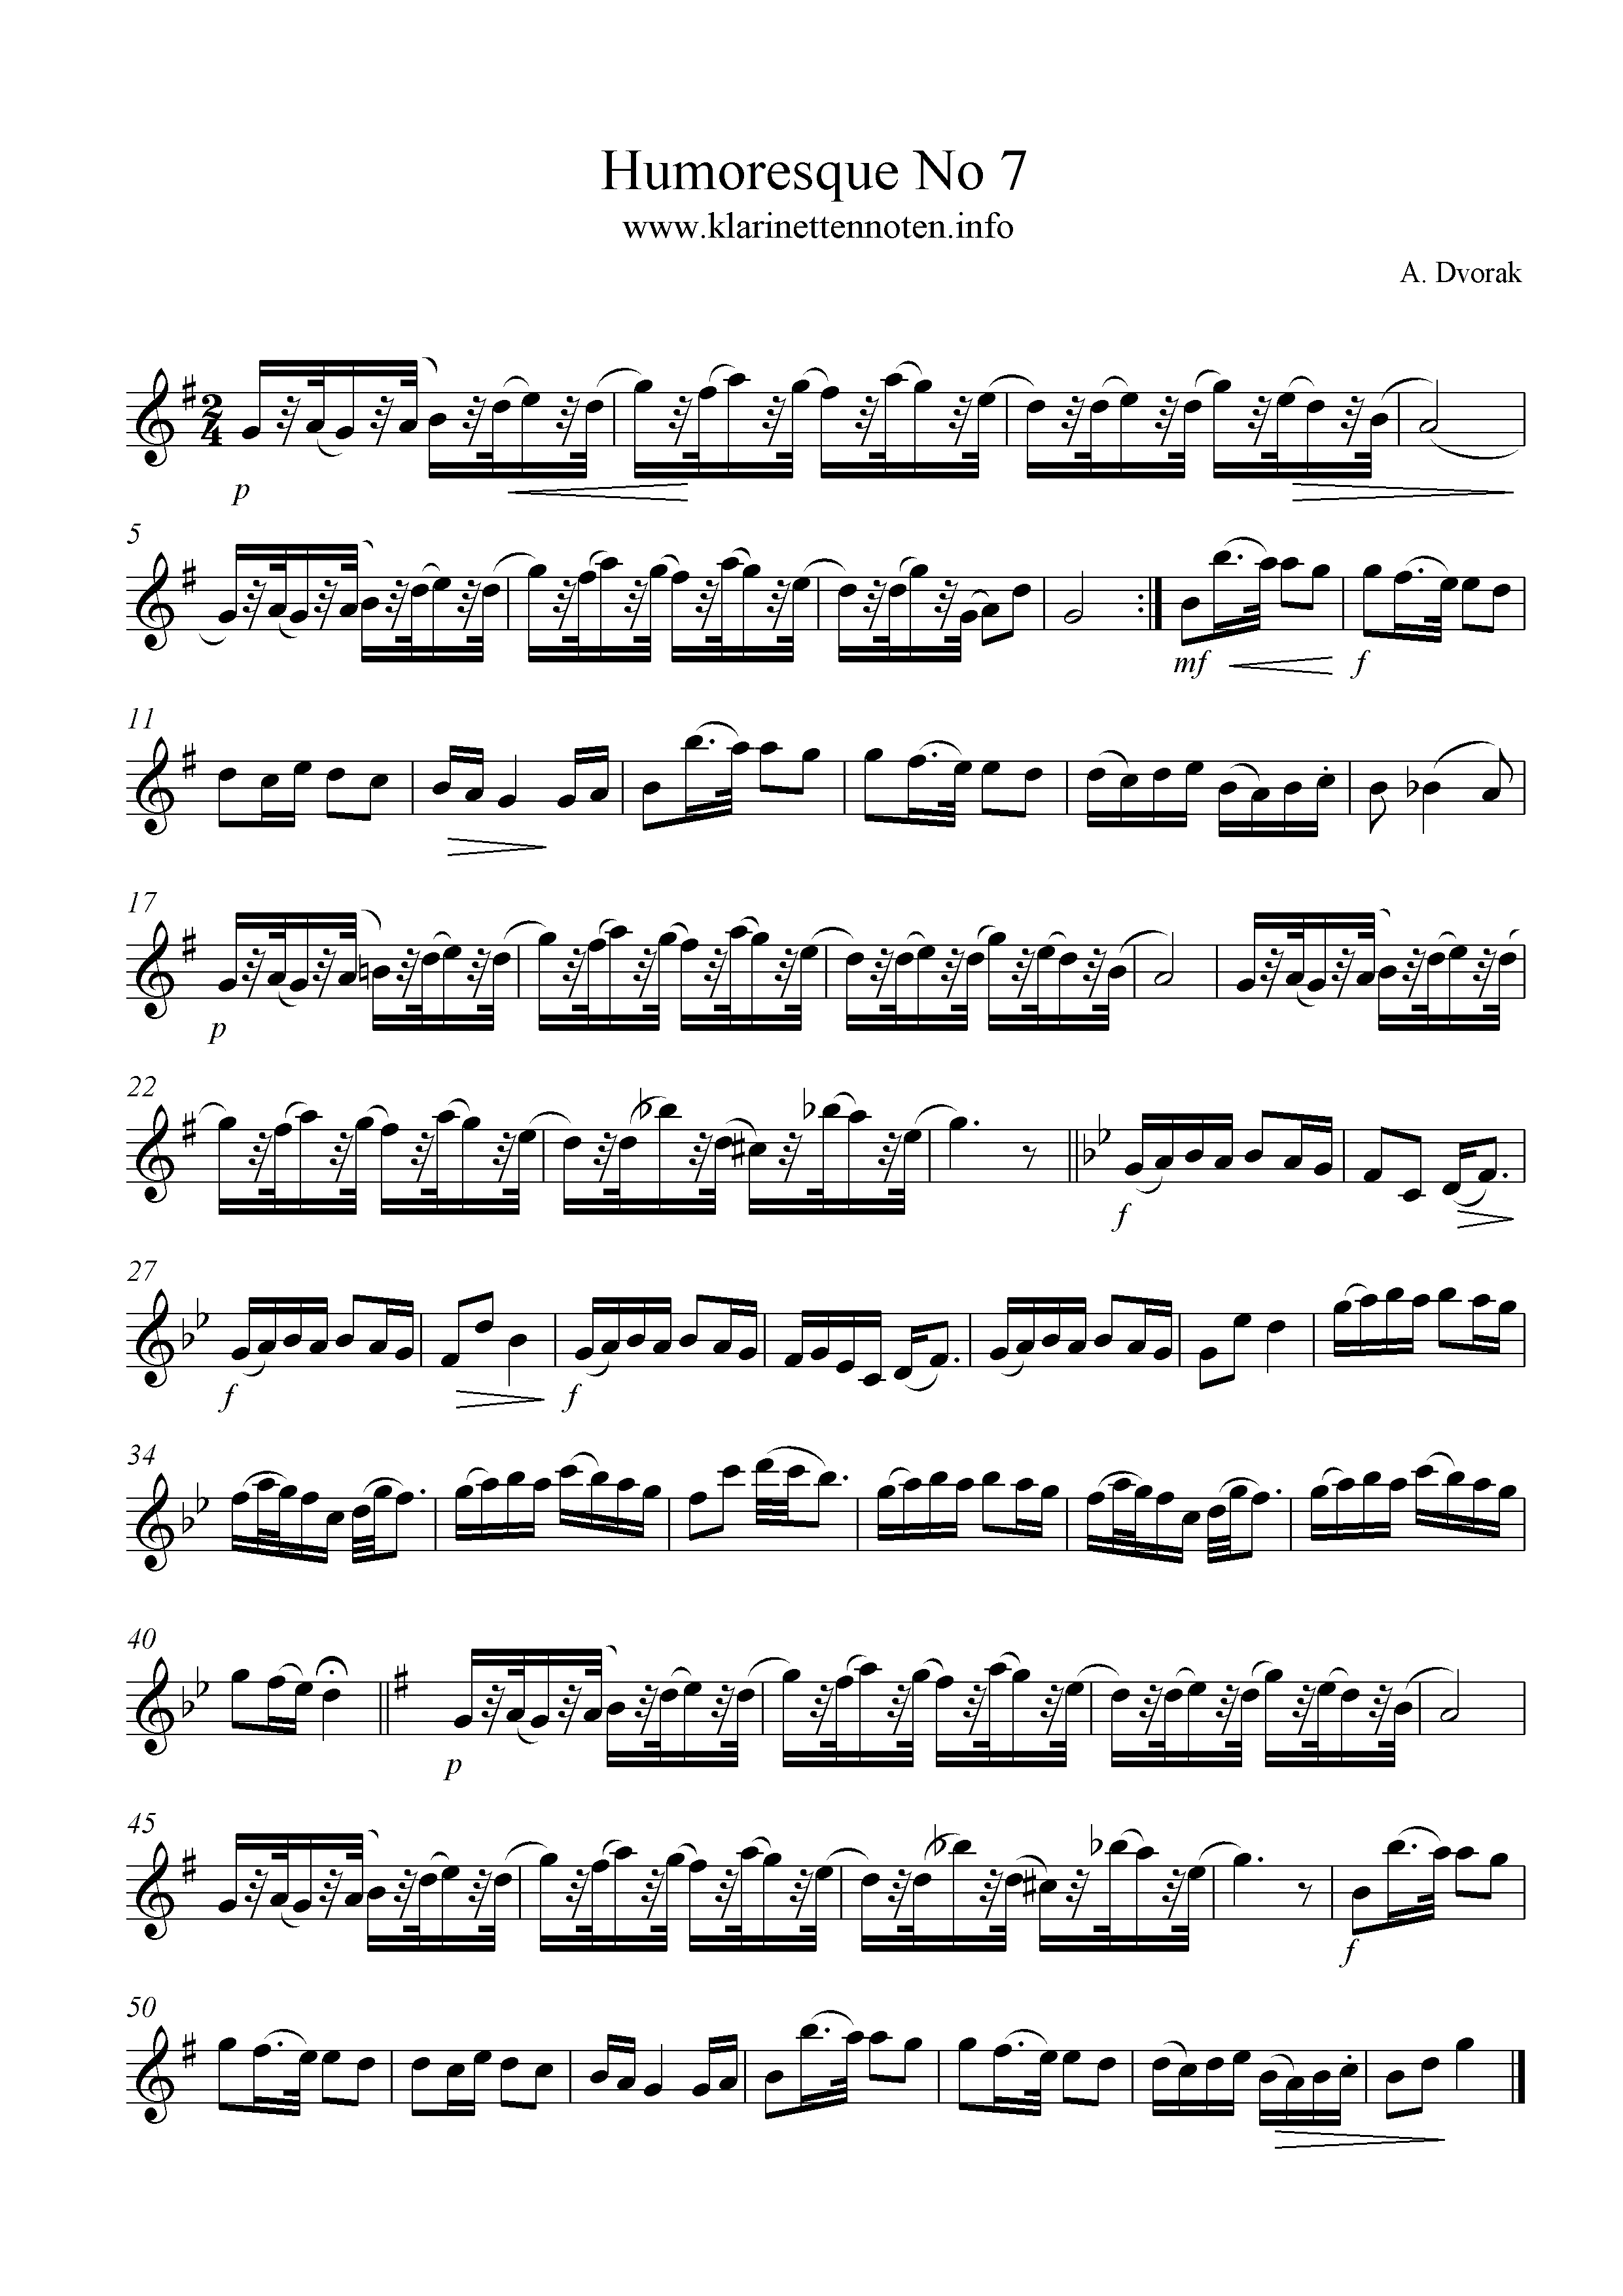 Humoreske No 7 Dvorak , Clarinet, Klarinette